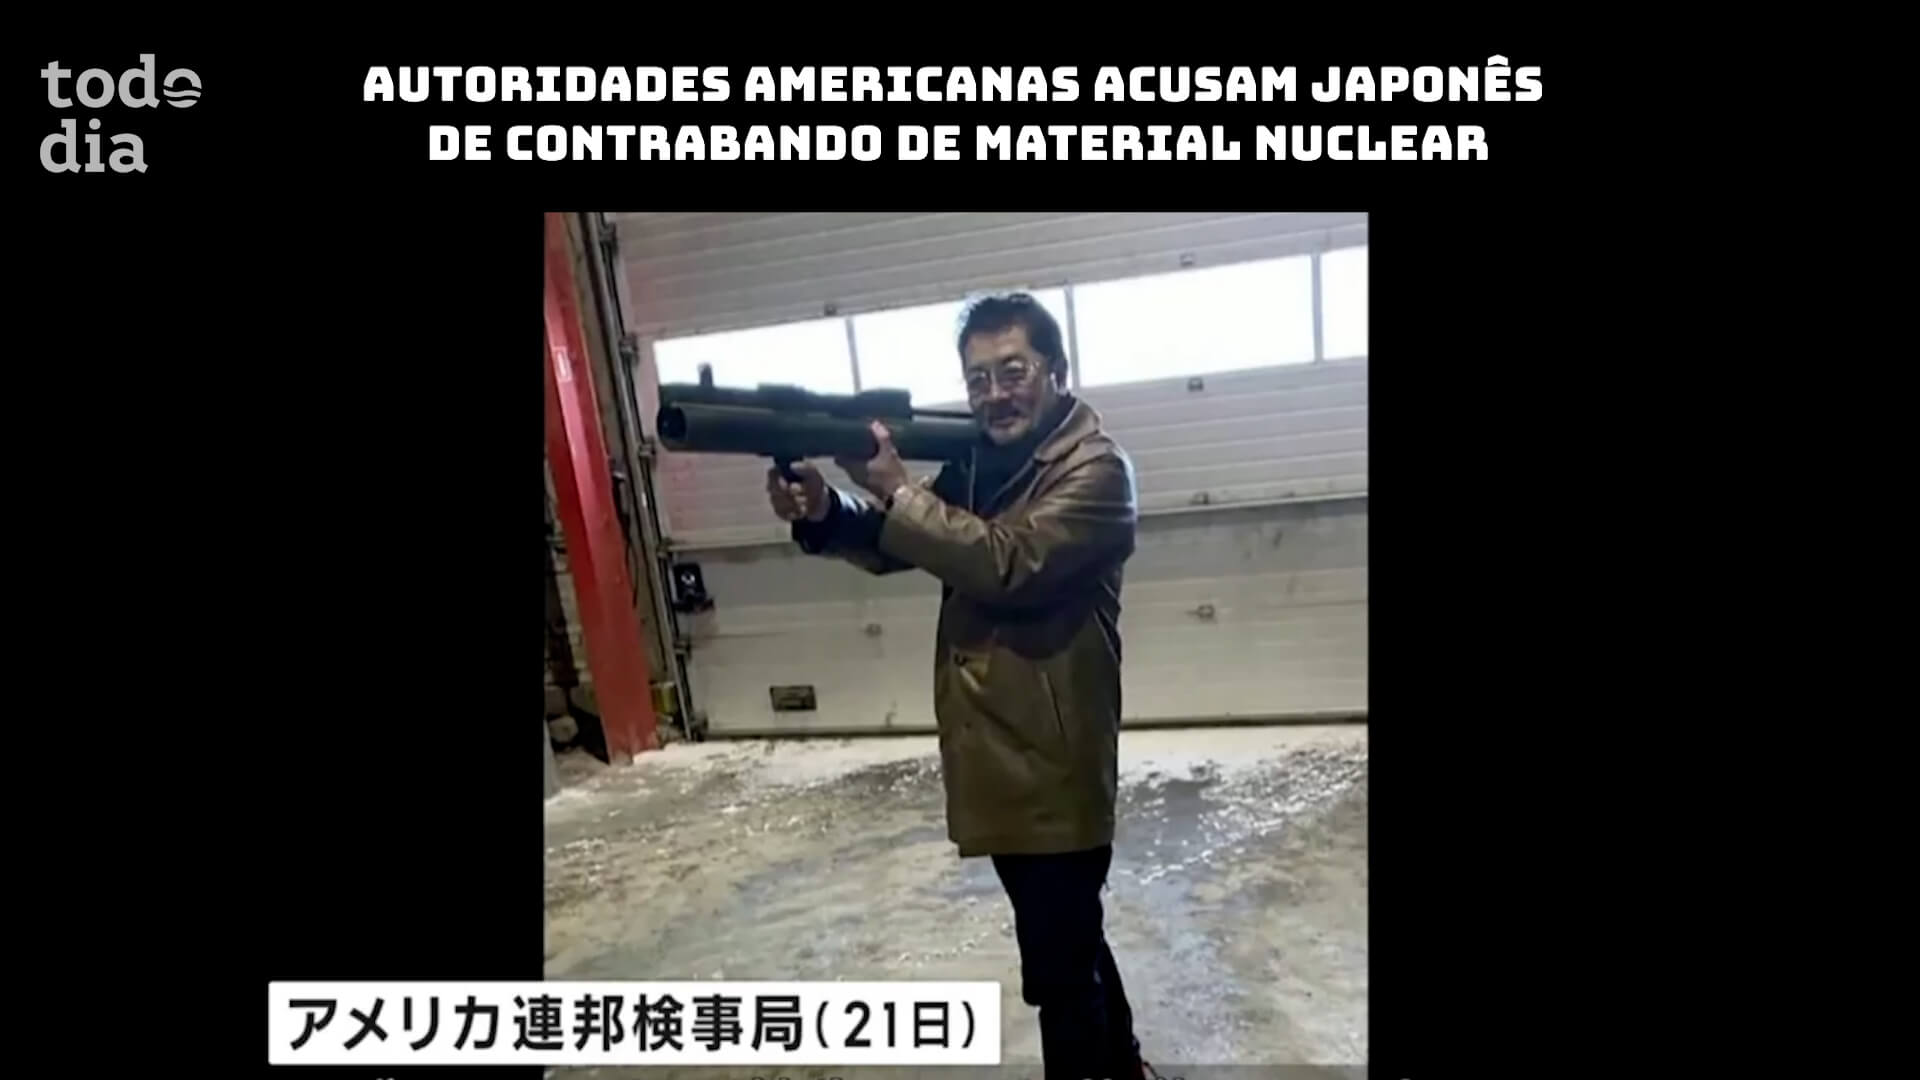 Autoridades americanas acusam japonês de contrabando de material nuclear